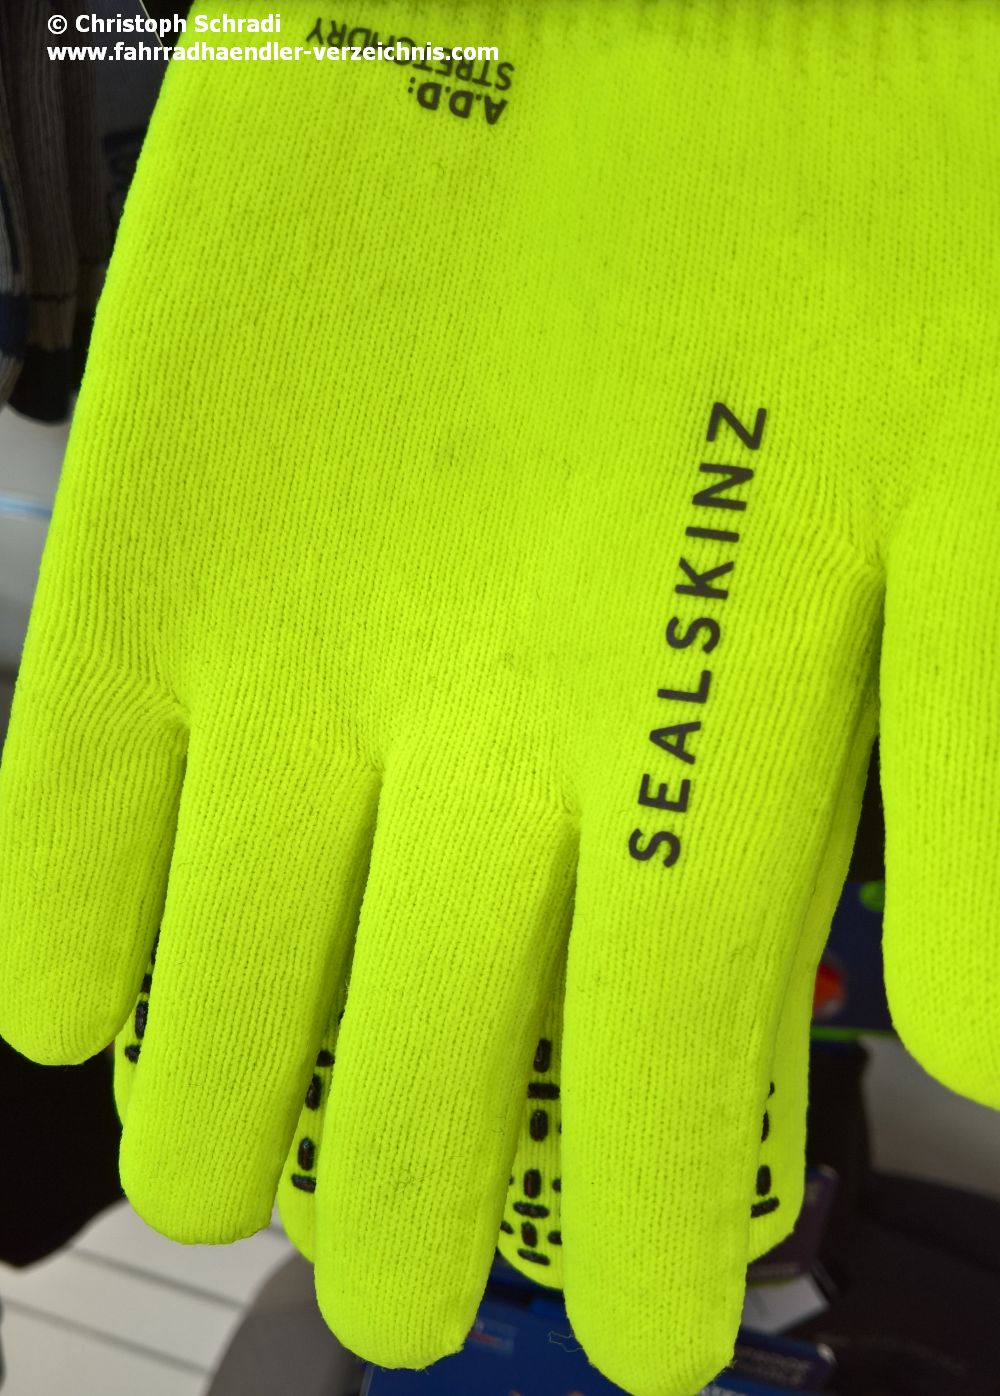 Handschuhe fürs Fahrrad in Neongelb für bessere Sichtbarkeit im Dunkeln